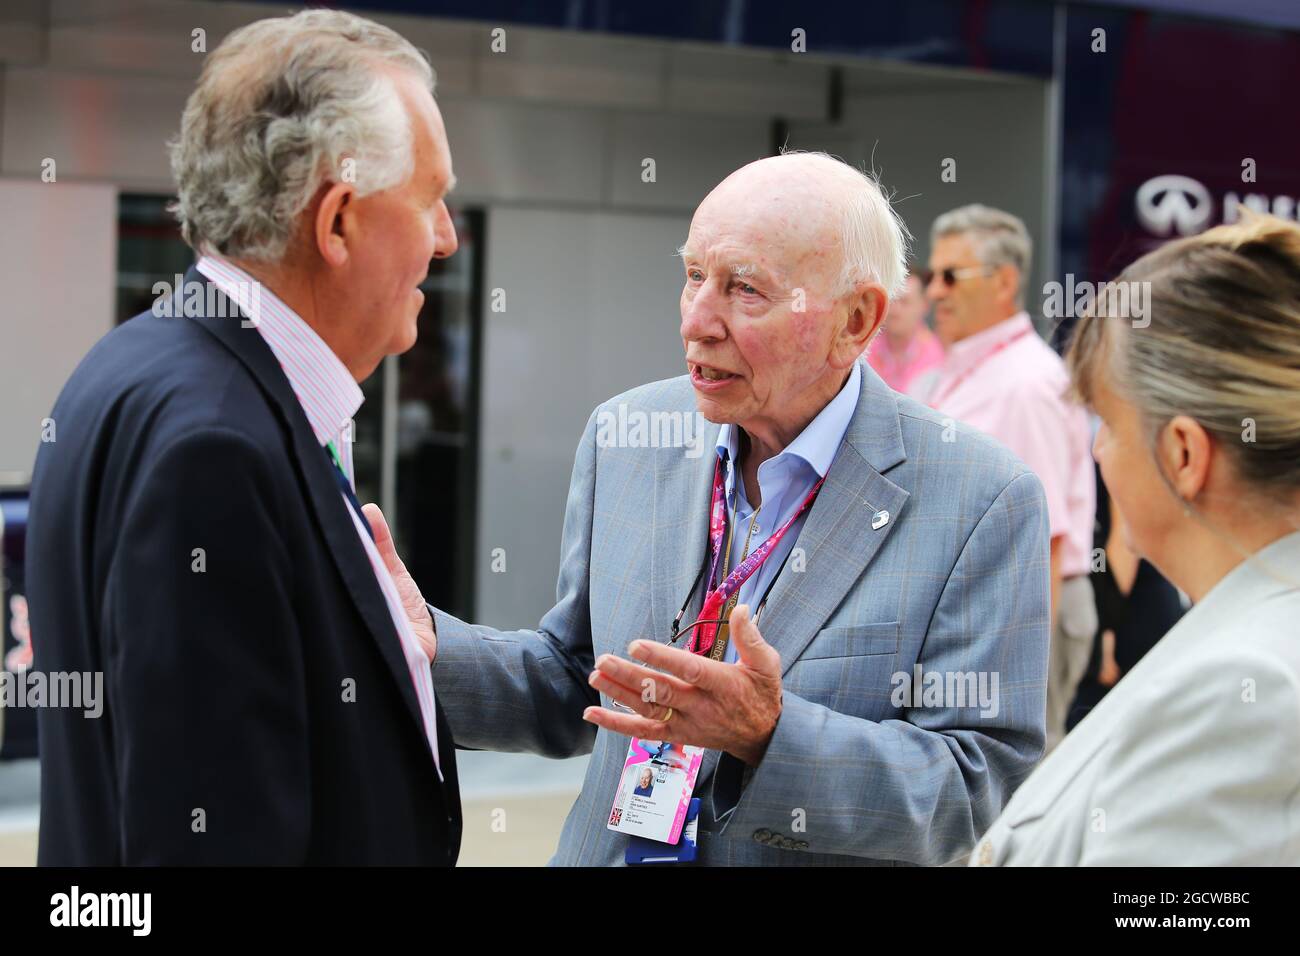 (De gauche à droite): Le député Peter Haim (GBR) avec John Surtees (GBR). Grand Prix de Grande-Bretagne, dimanche 5 juillet 2015. Silverstone, Angleterre. Banque D'Images